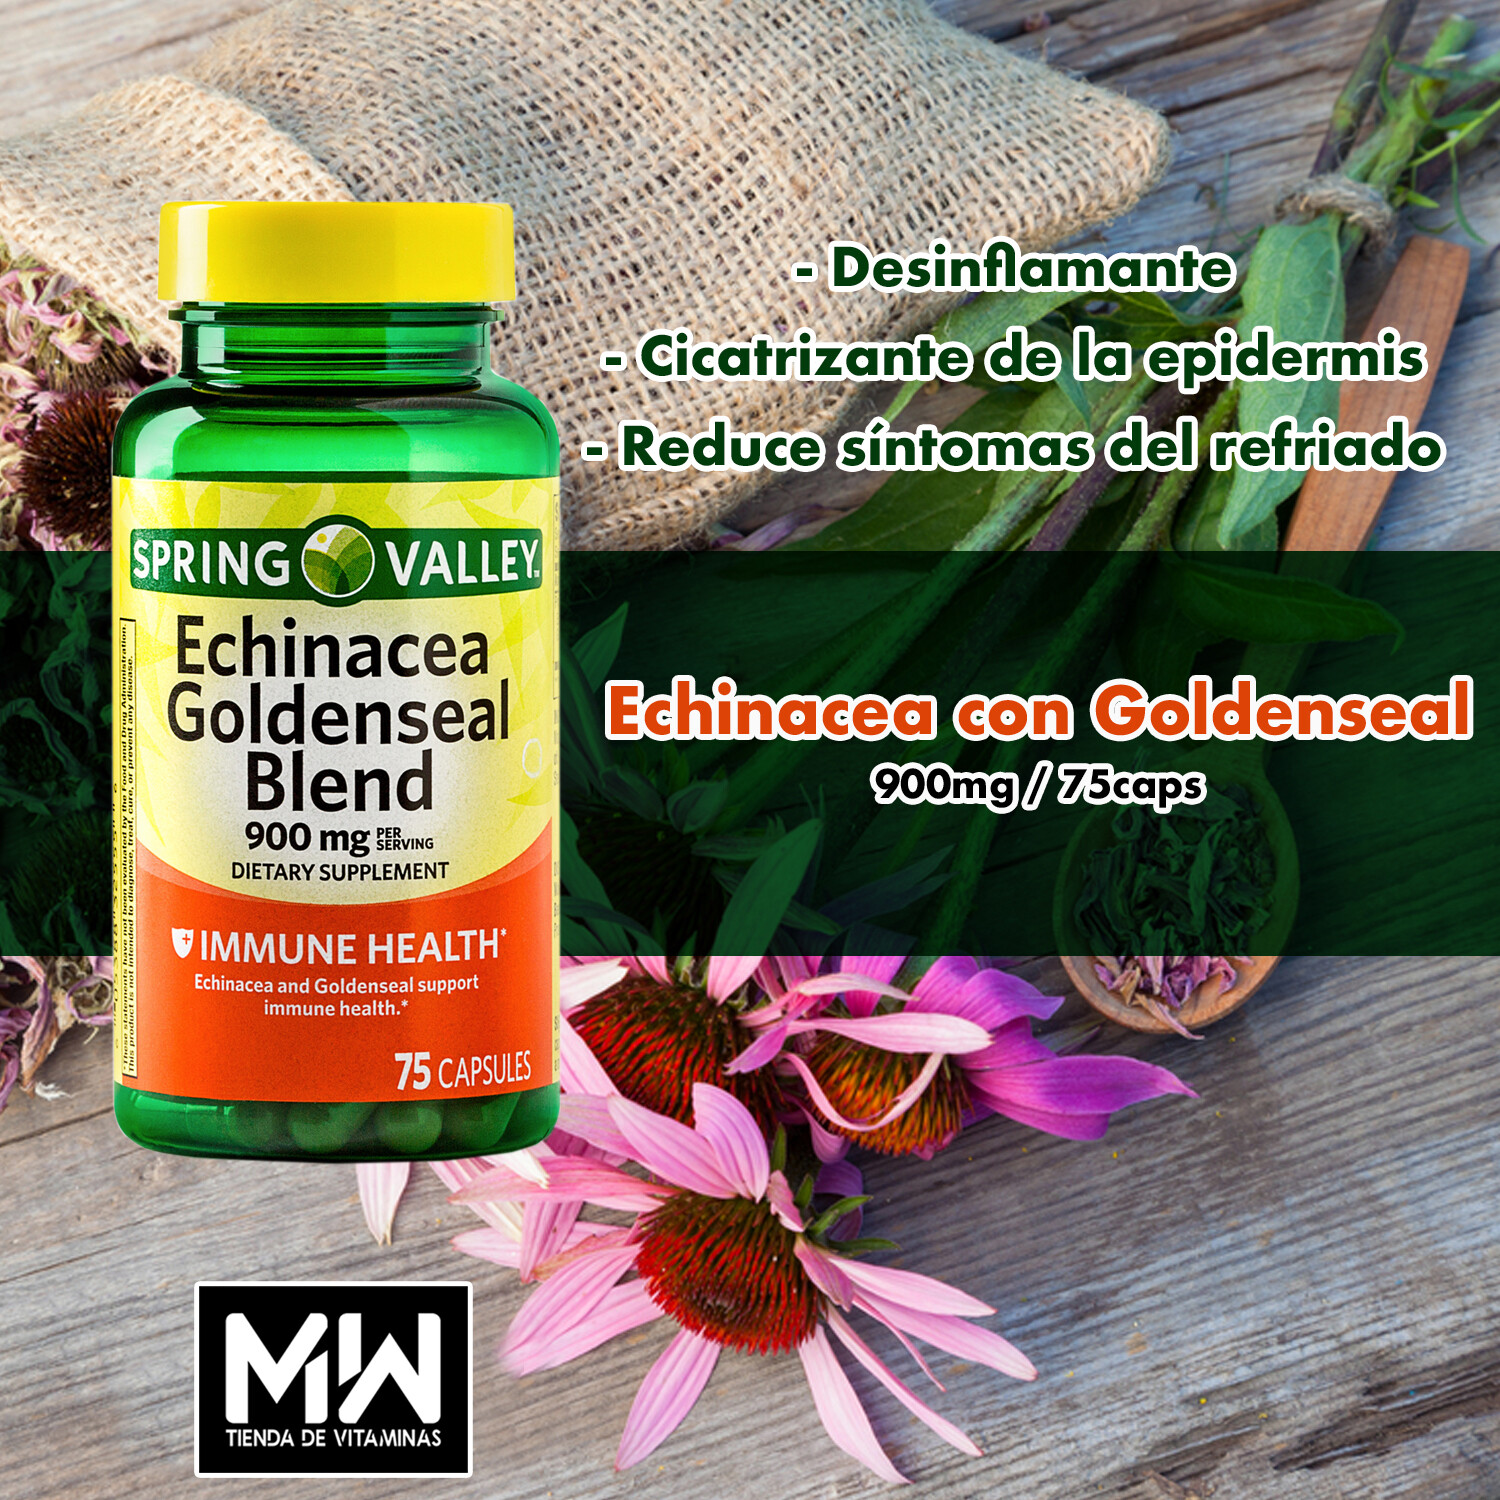 Equinácea Goldenseal / Echinacea Goldenseal blend 900 mg. 75 Caps.